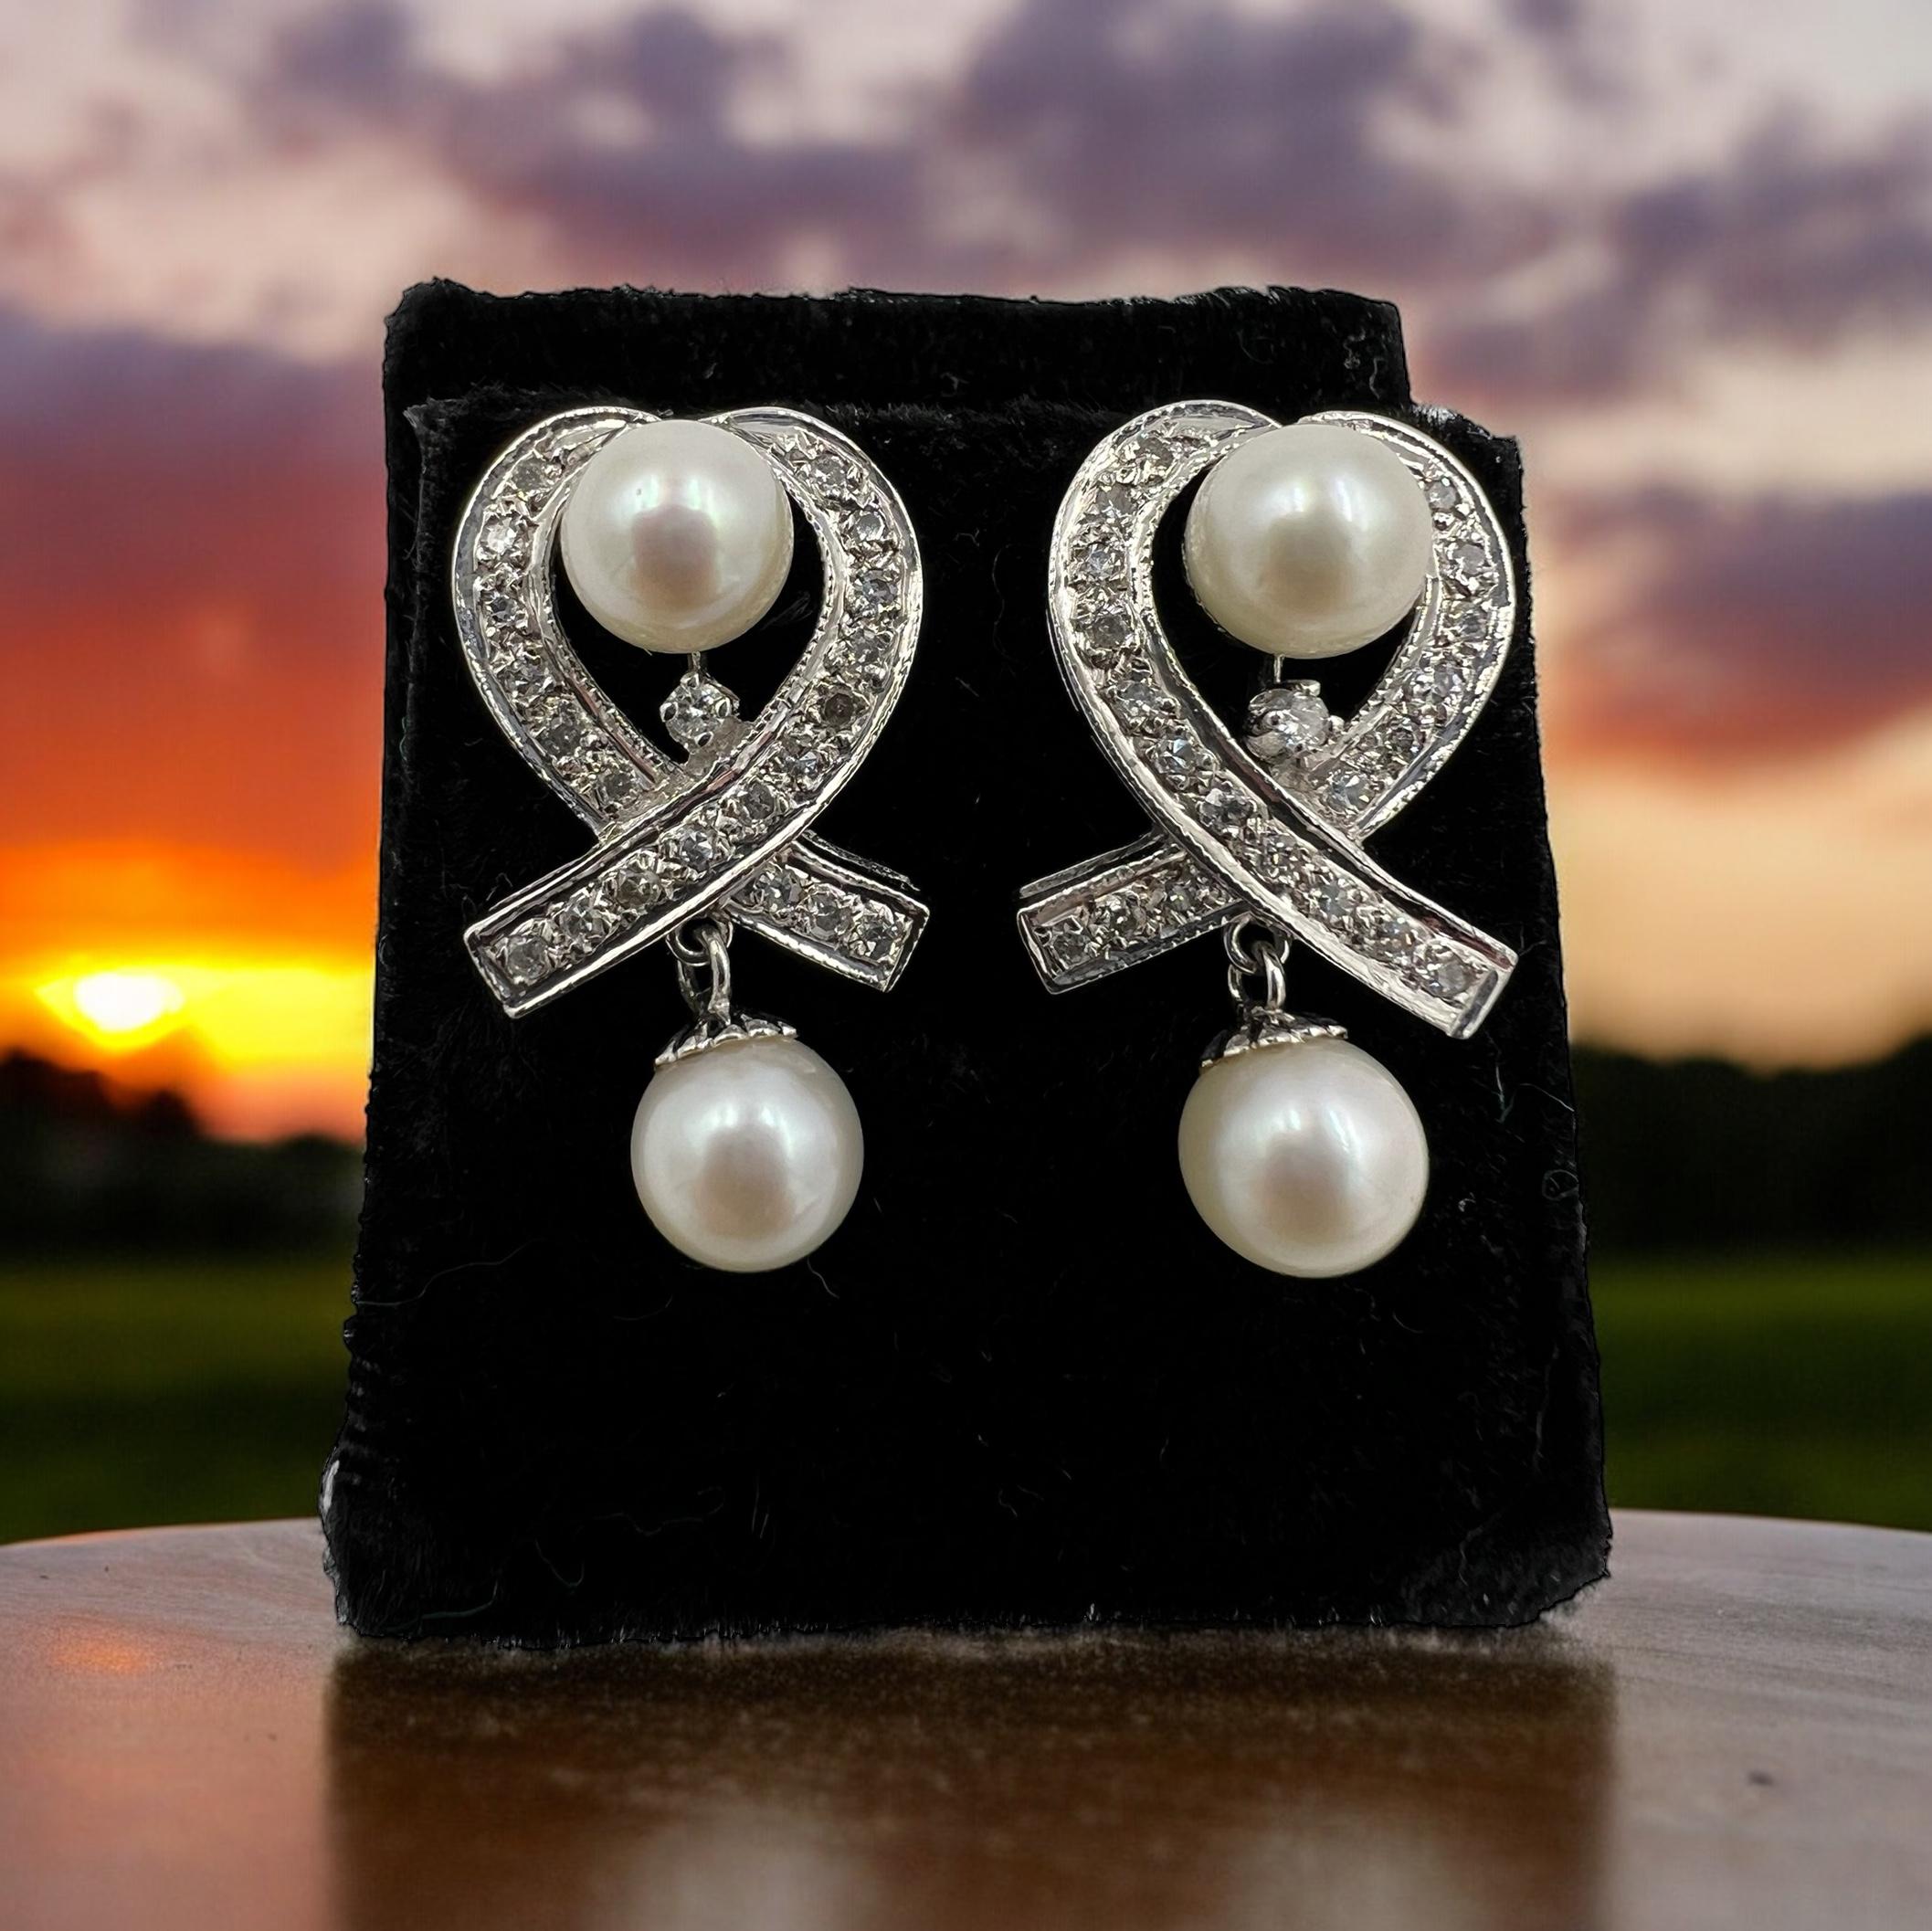 1950er Jahre Diamant-Perlen-Ohrringe aus Weißgold.

 In der glamourösen Ära der 1950er Jahre schmückten sich die Frauen mit exquisitem Schmuck, der Eleganz und Raffinesse ausstrahlte. Ein solches zeitloses Stück, das die Essenz dieser Ära einfing,